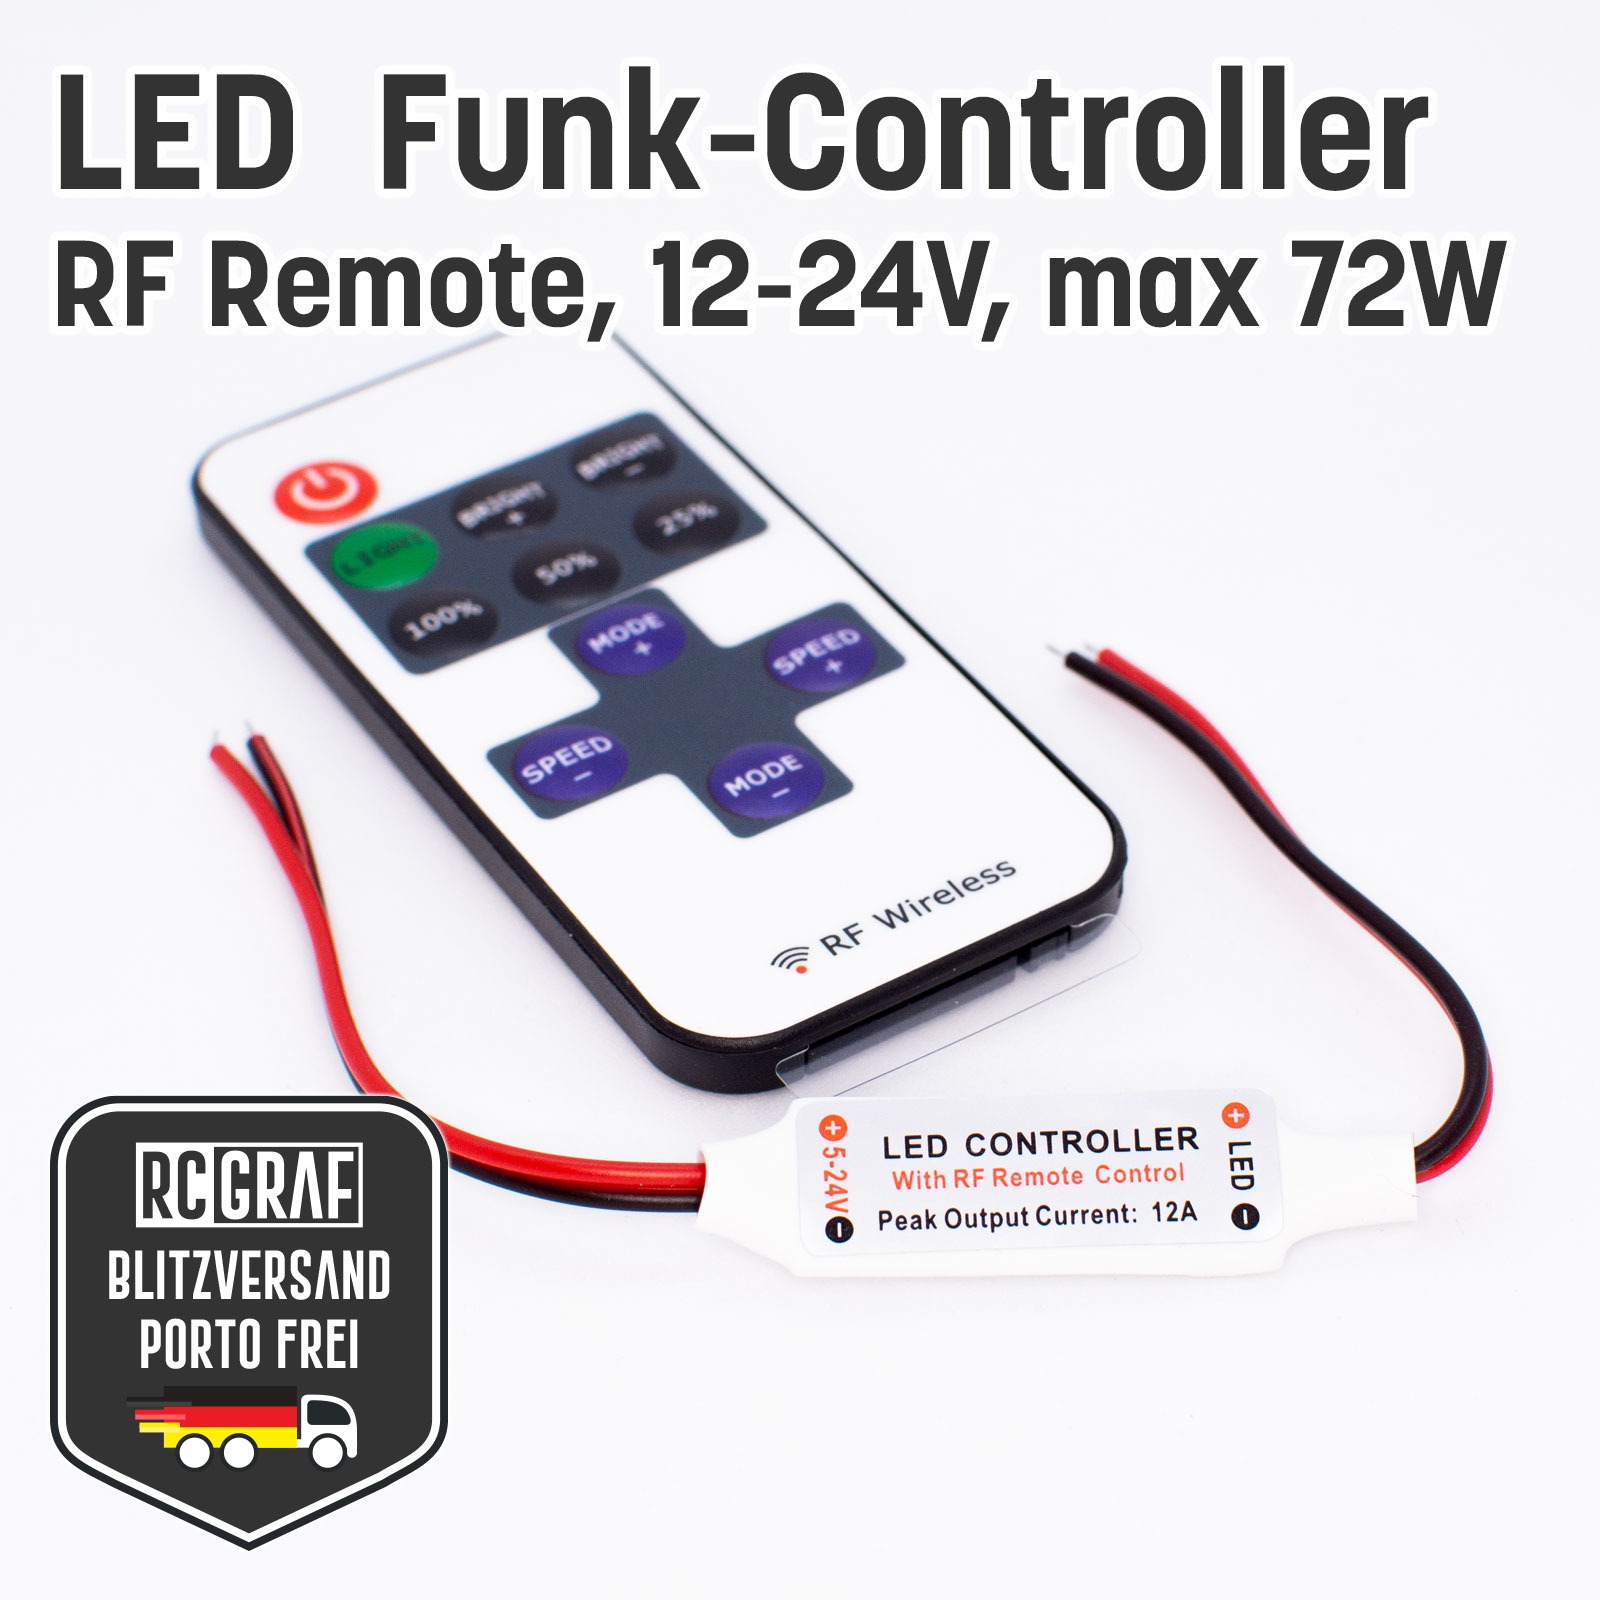 Mini LED Funk-Controller Dimmer Schalter mit Fernbedienung